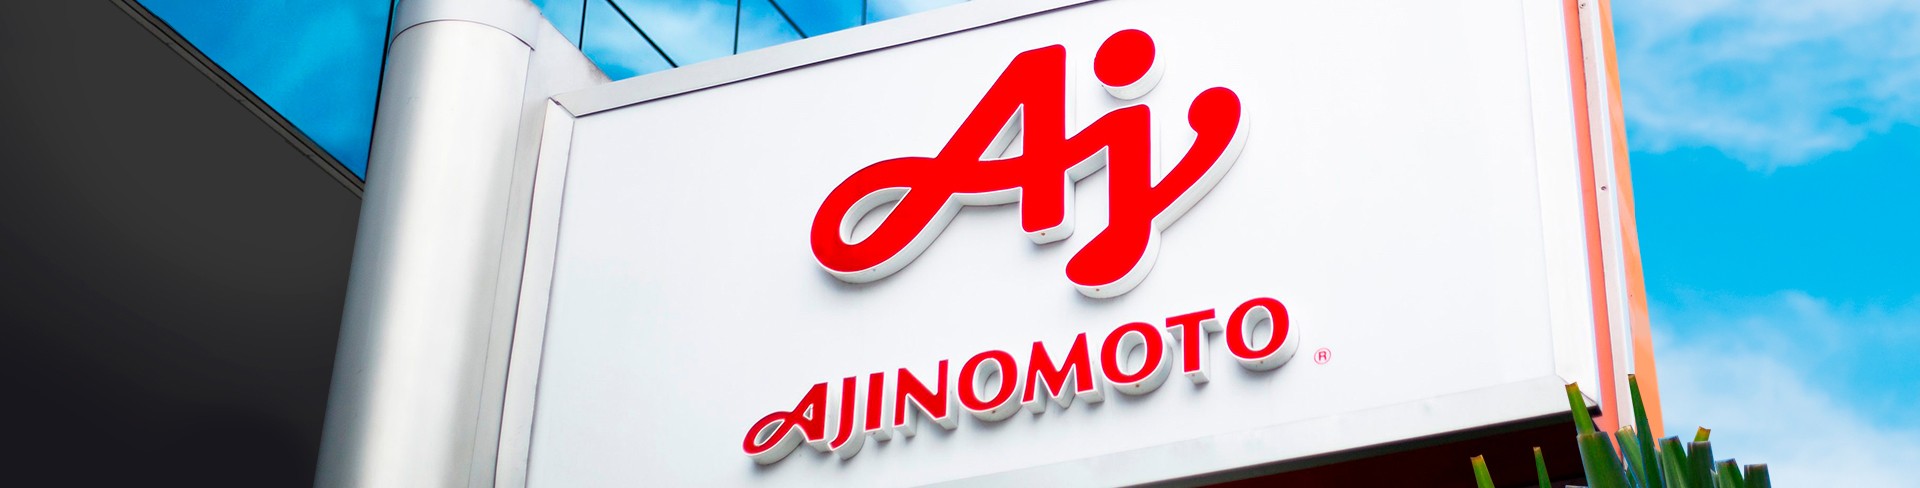 Placa da fachada da empresa com a logo da Ajinomoto